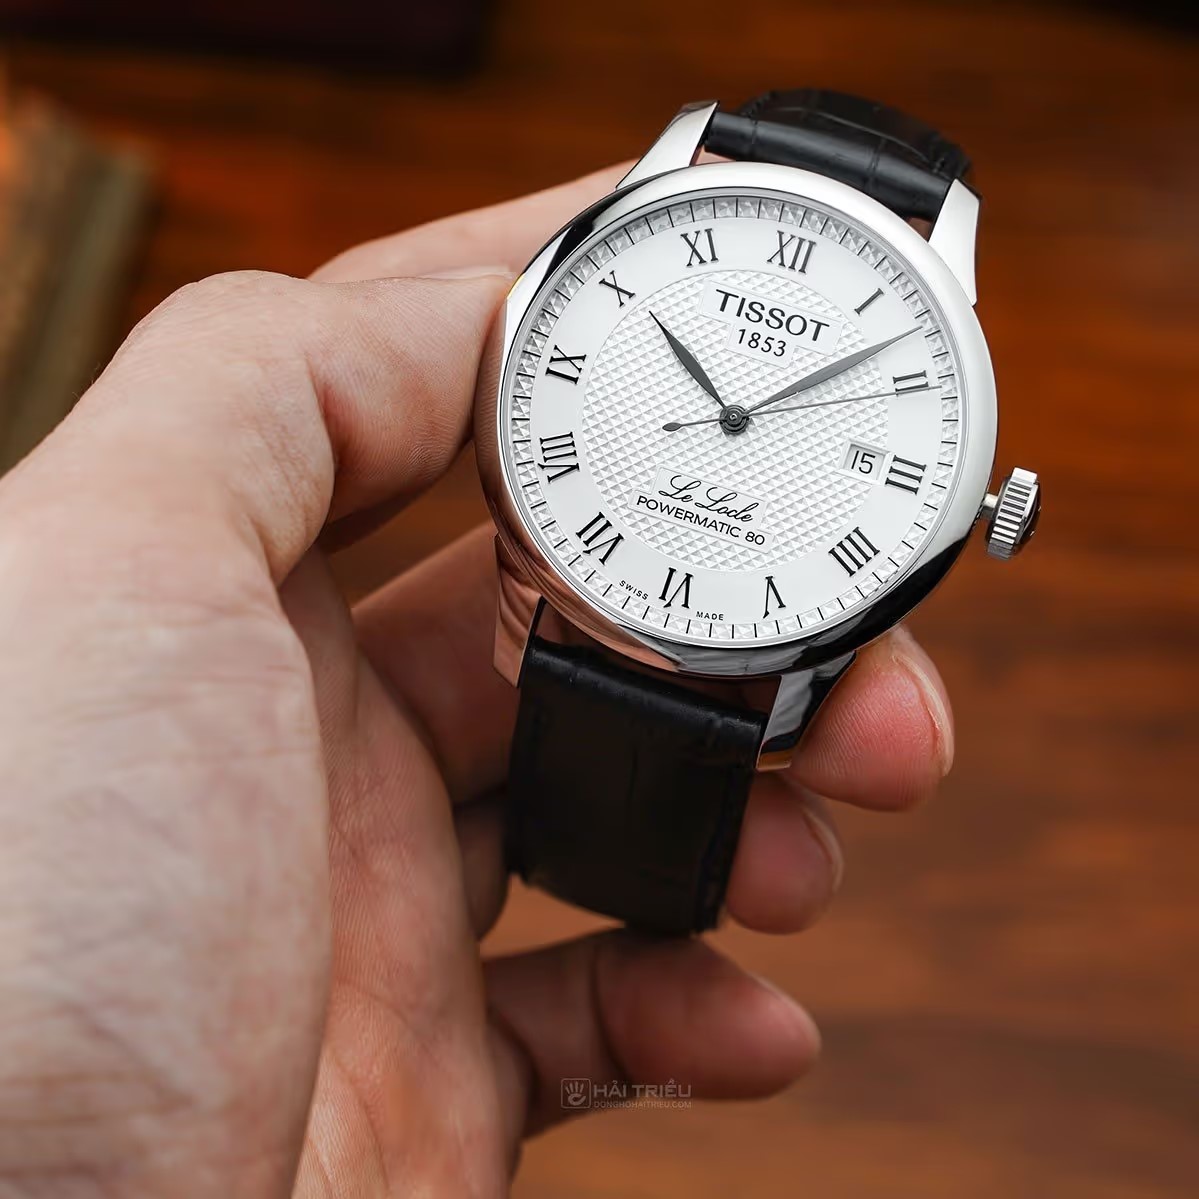 Mẫu đồng hồ cho người lớn tuổi: Tissot T006.407.16.033.00